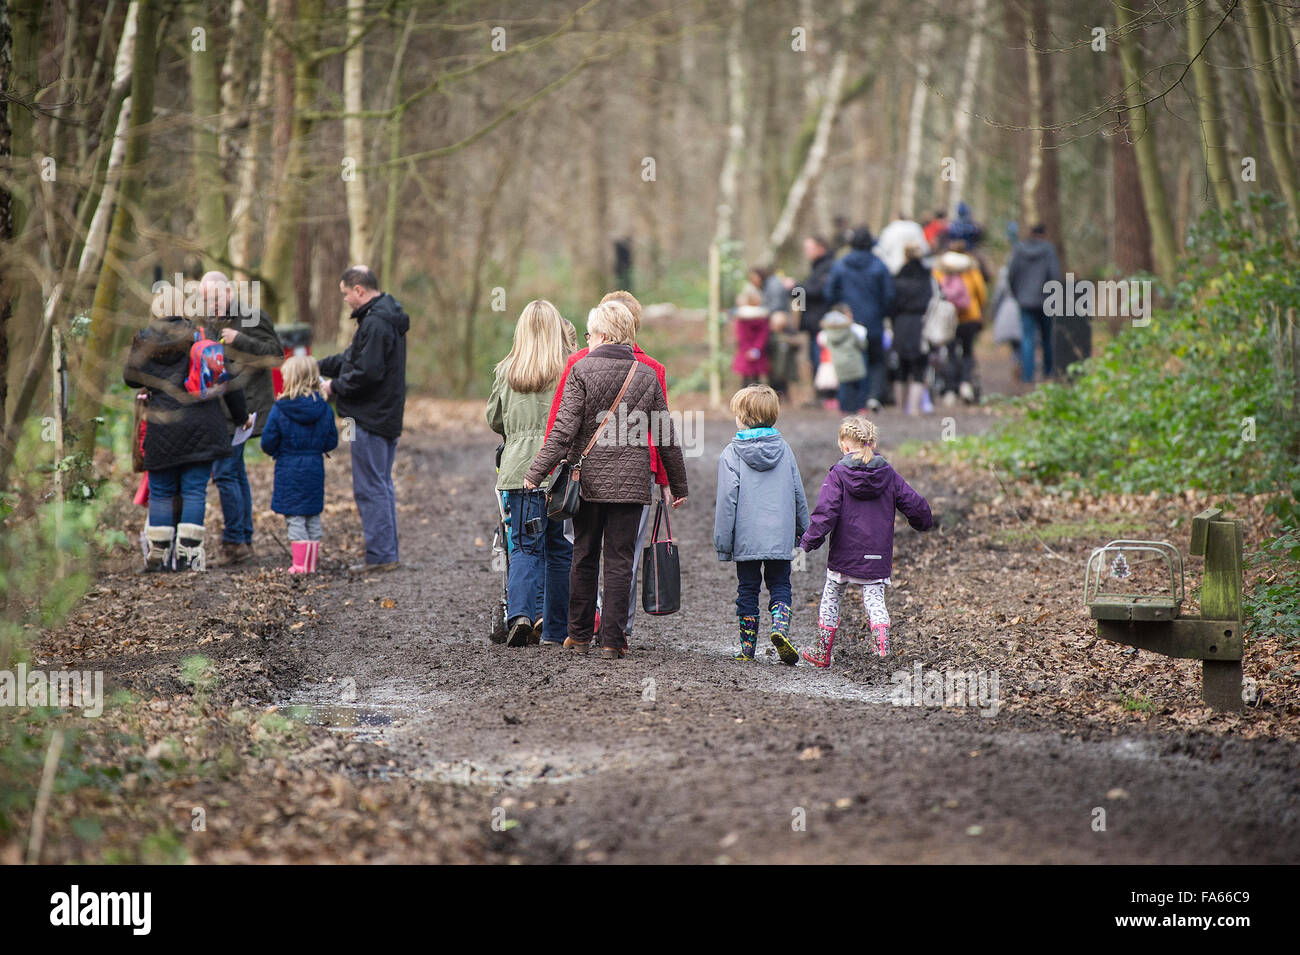 Familien zu Fuß durch den Wald Thorndon Park in Essex, England, Vereinigtes Königreich. Stockfoto